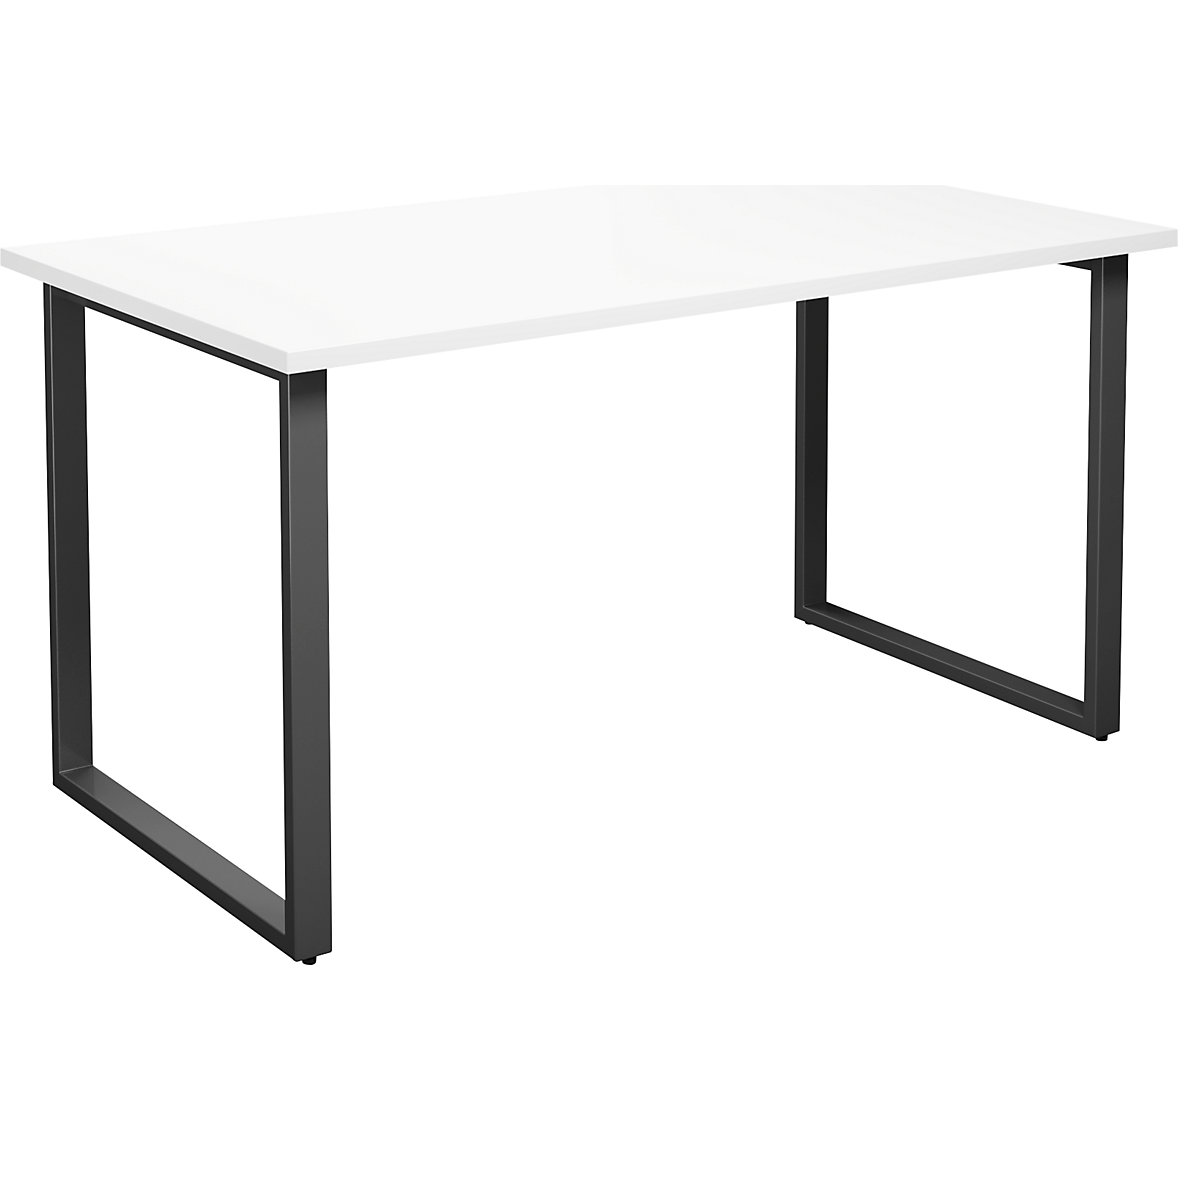 DUO-O multi-purpose desk, straight tabletop, WxD 1400 x 800 mm, white, black-14